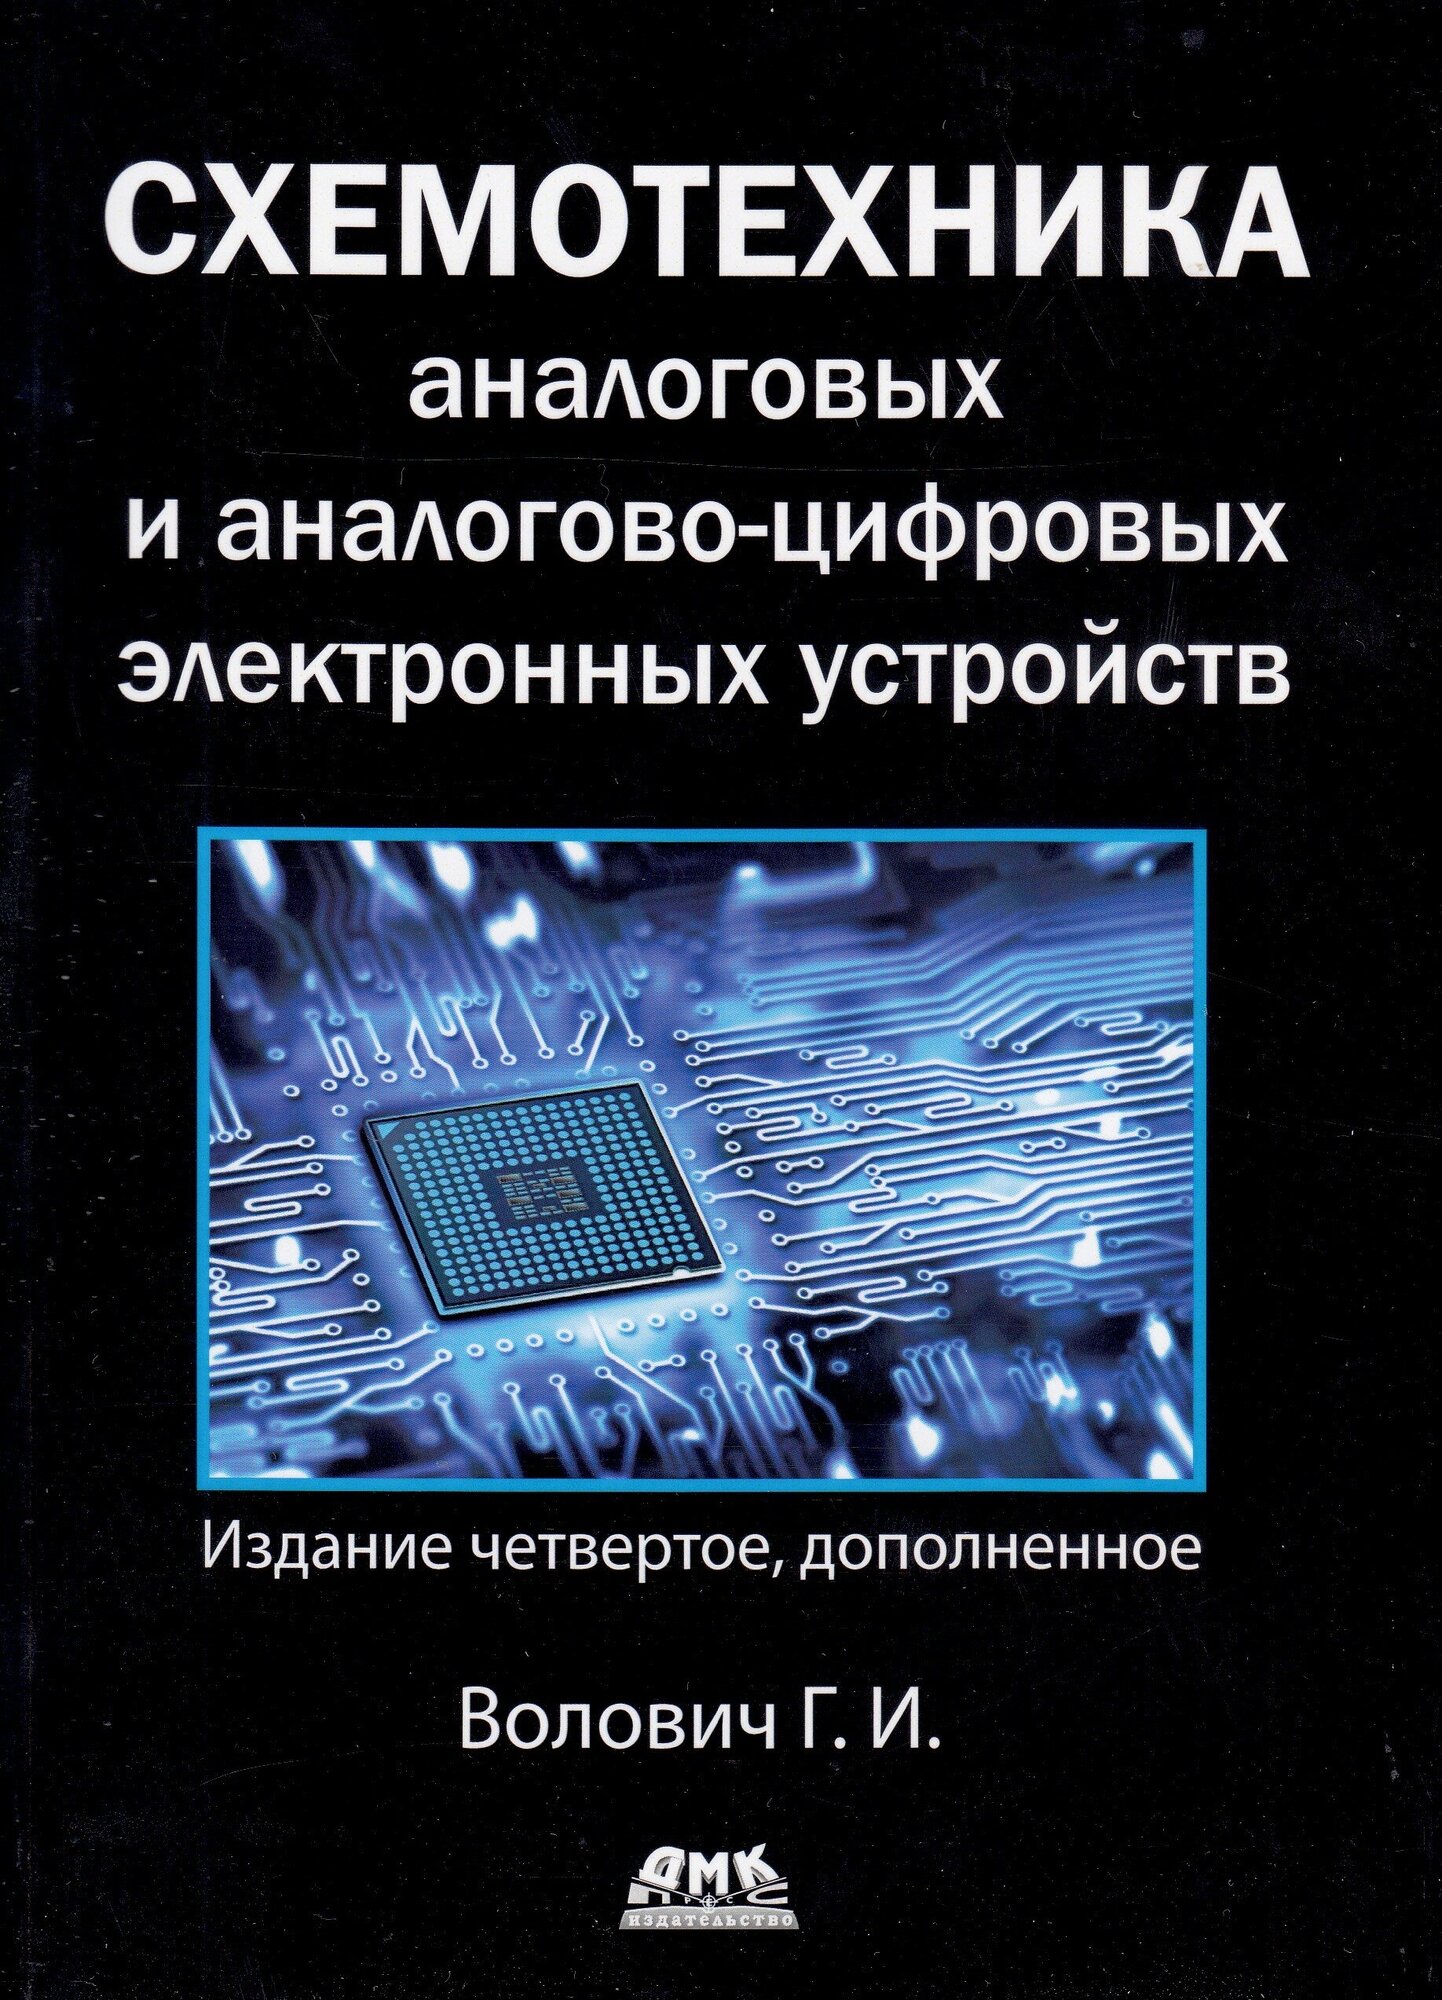 Схемотехника аналоговых и аналогово-цифровых устройств - фото №2